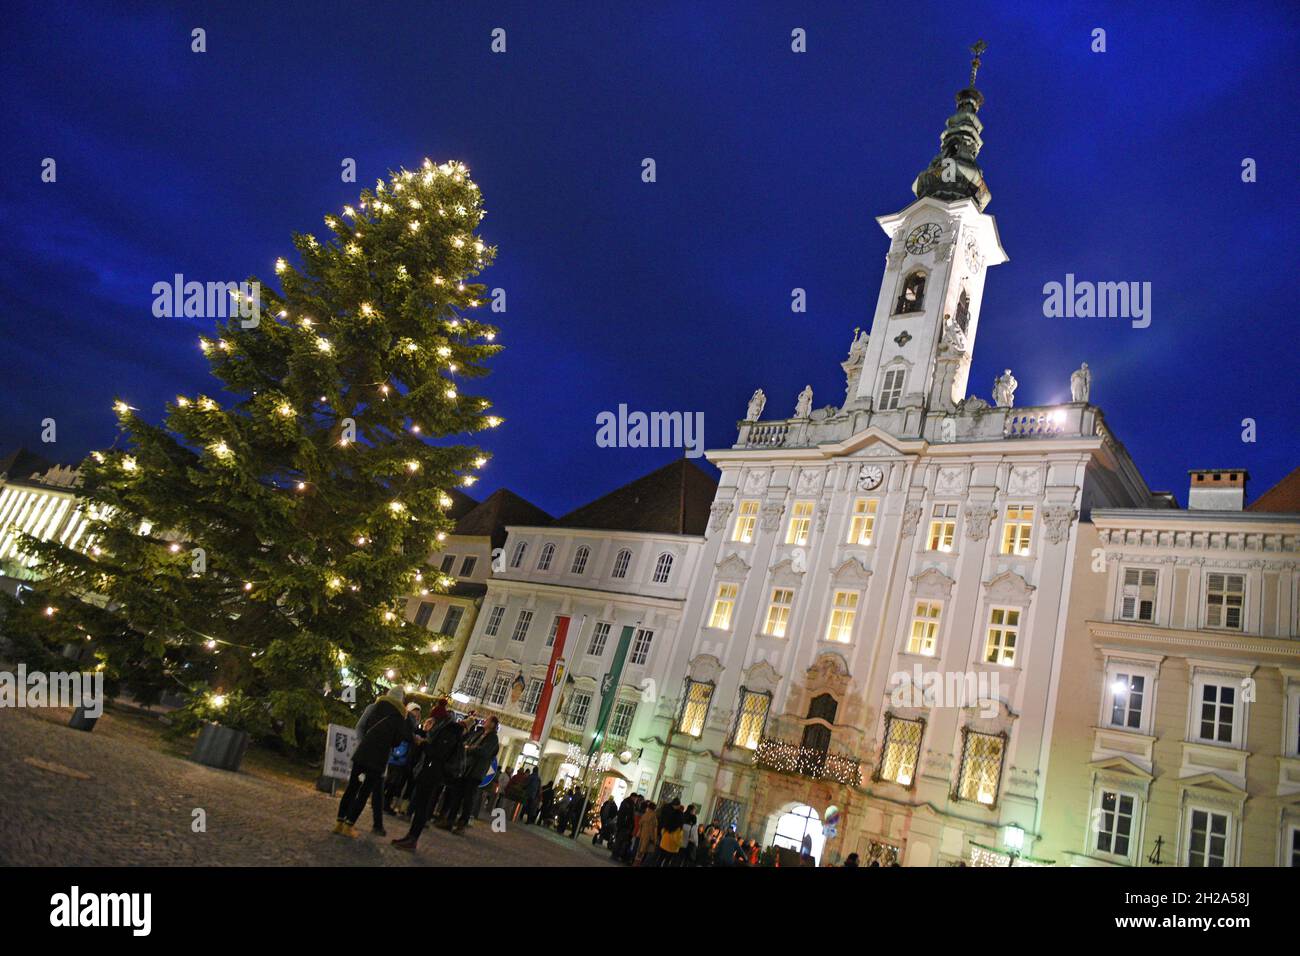 Auf dem historischen Stadtplatz von Steyr (Oberösterreich) wird jedes Jahr im Advent ein schöner, beleuchteter Weihnachtsbaum aufgestellt. - On the hi Stock Photo